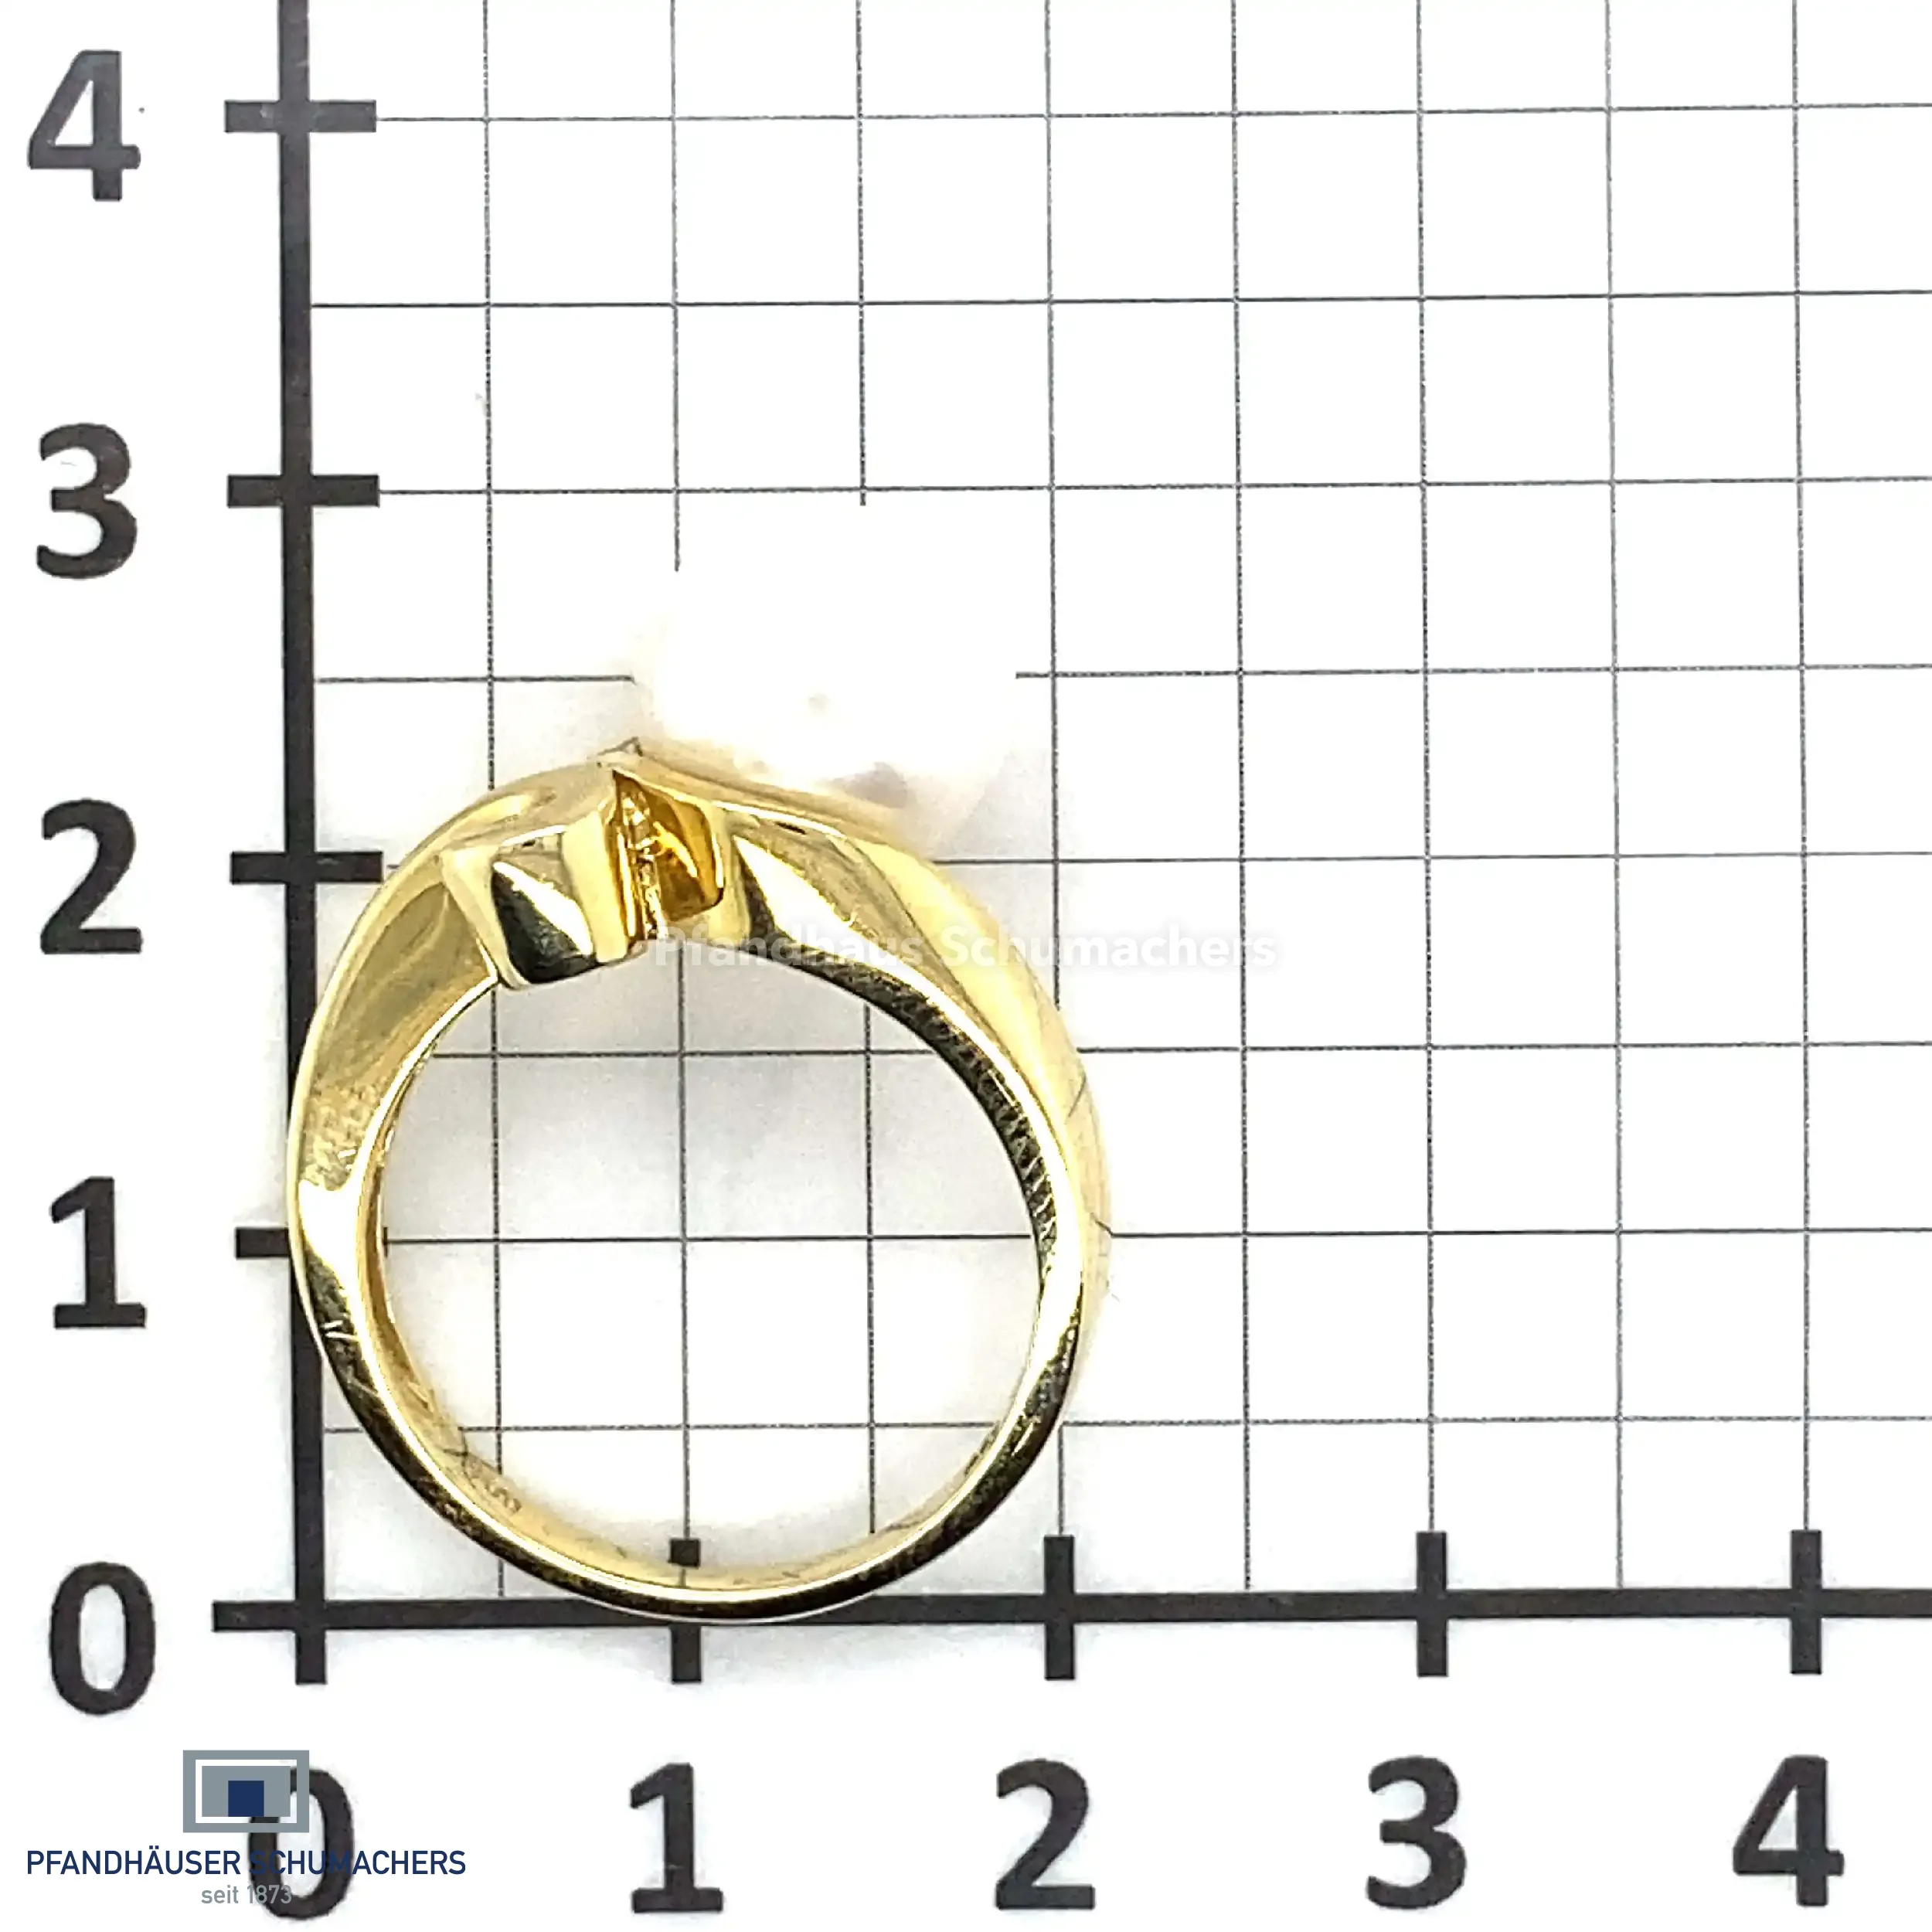 Ring Gelbgold mit Perle und Brillant, graviert mit 0,04ct 